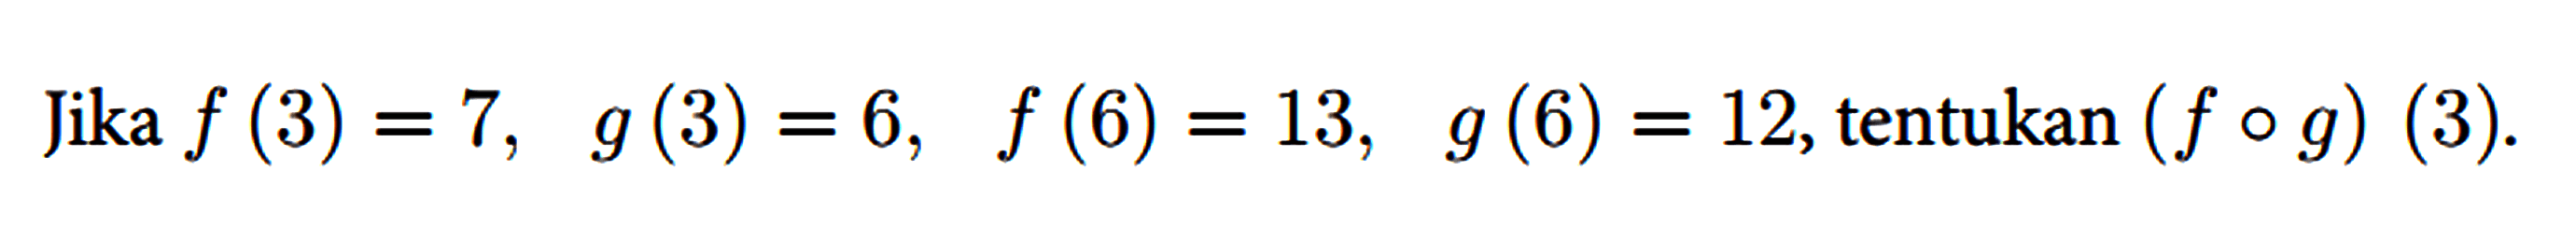 Jika f(3)=7, g(3)=6, f(6)=13, g(6)=12 , tentukan (f o g)(3)